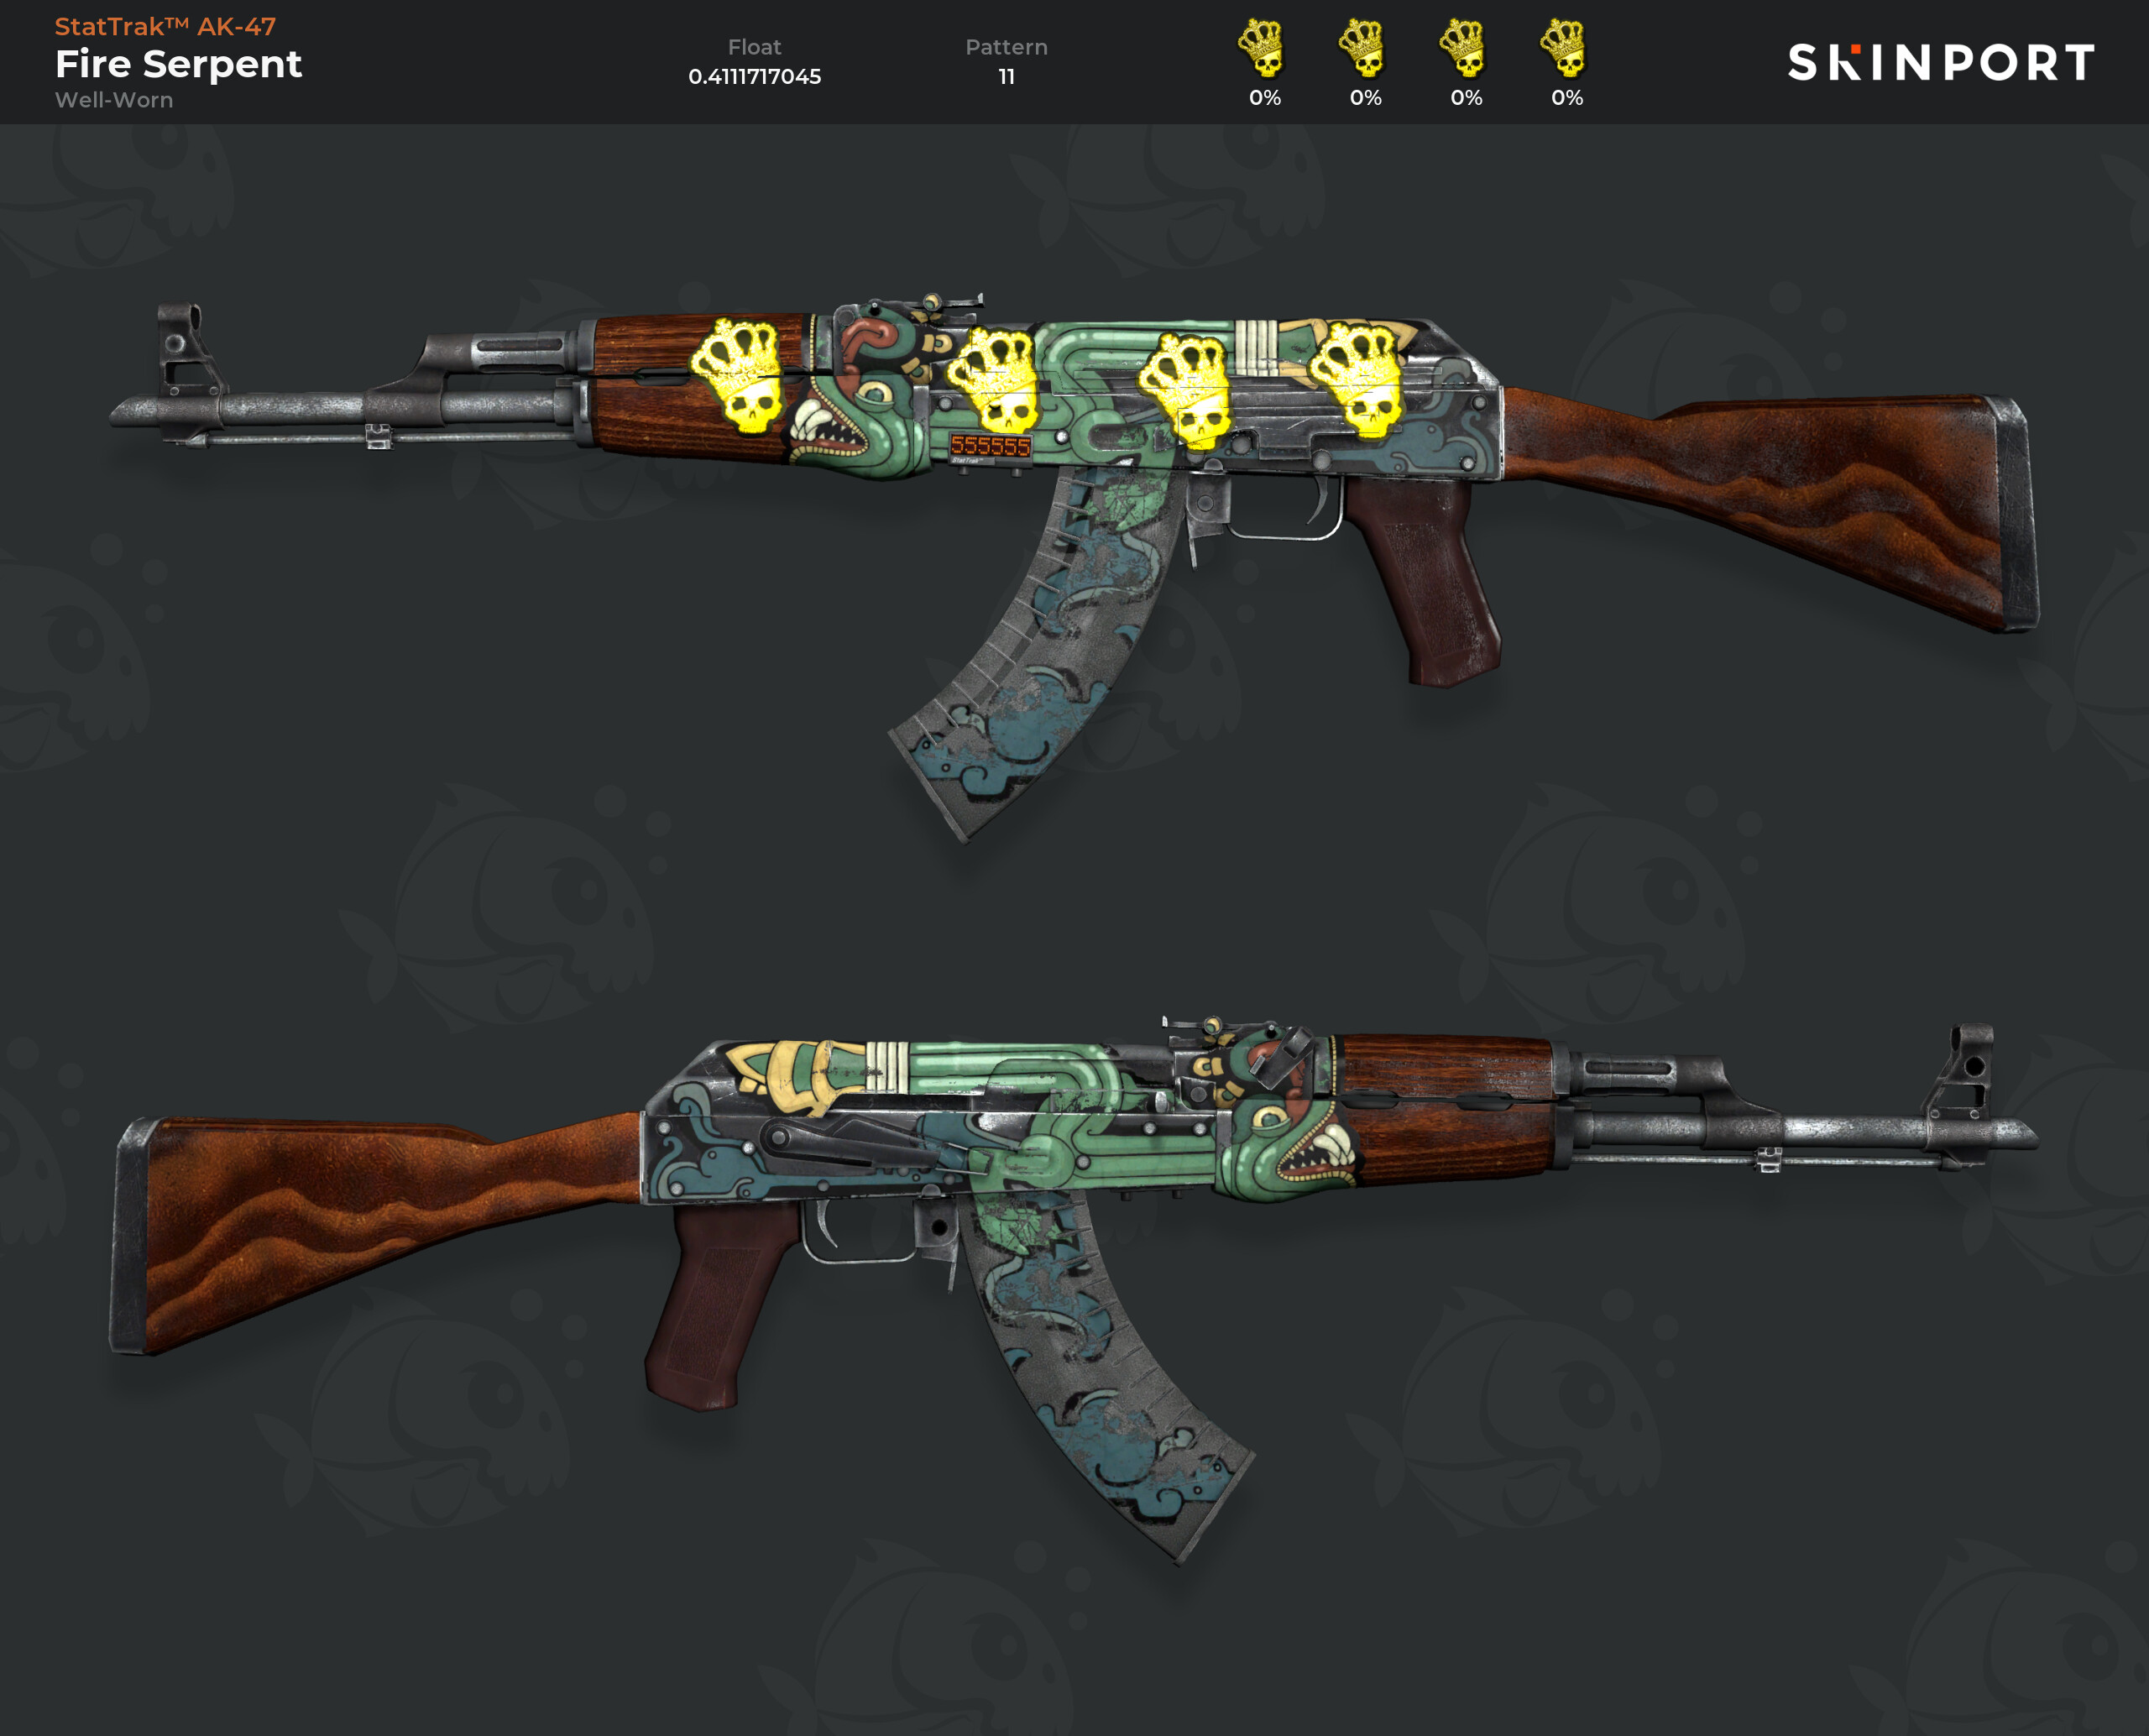 StatTrak ™ AK-47 Fire Serpent (Well-Worn) - CS:GO - Skinport.